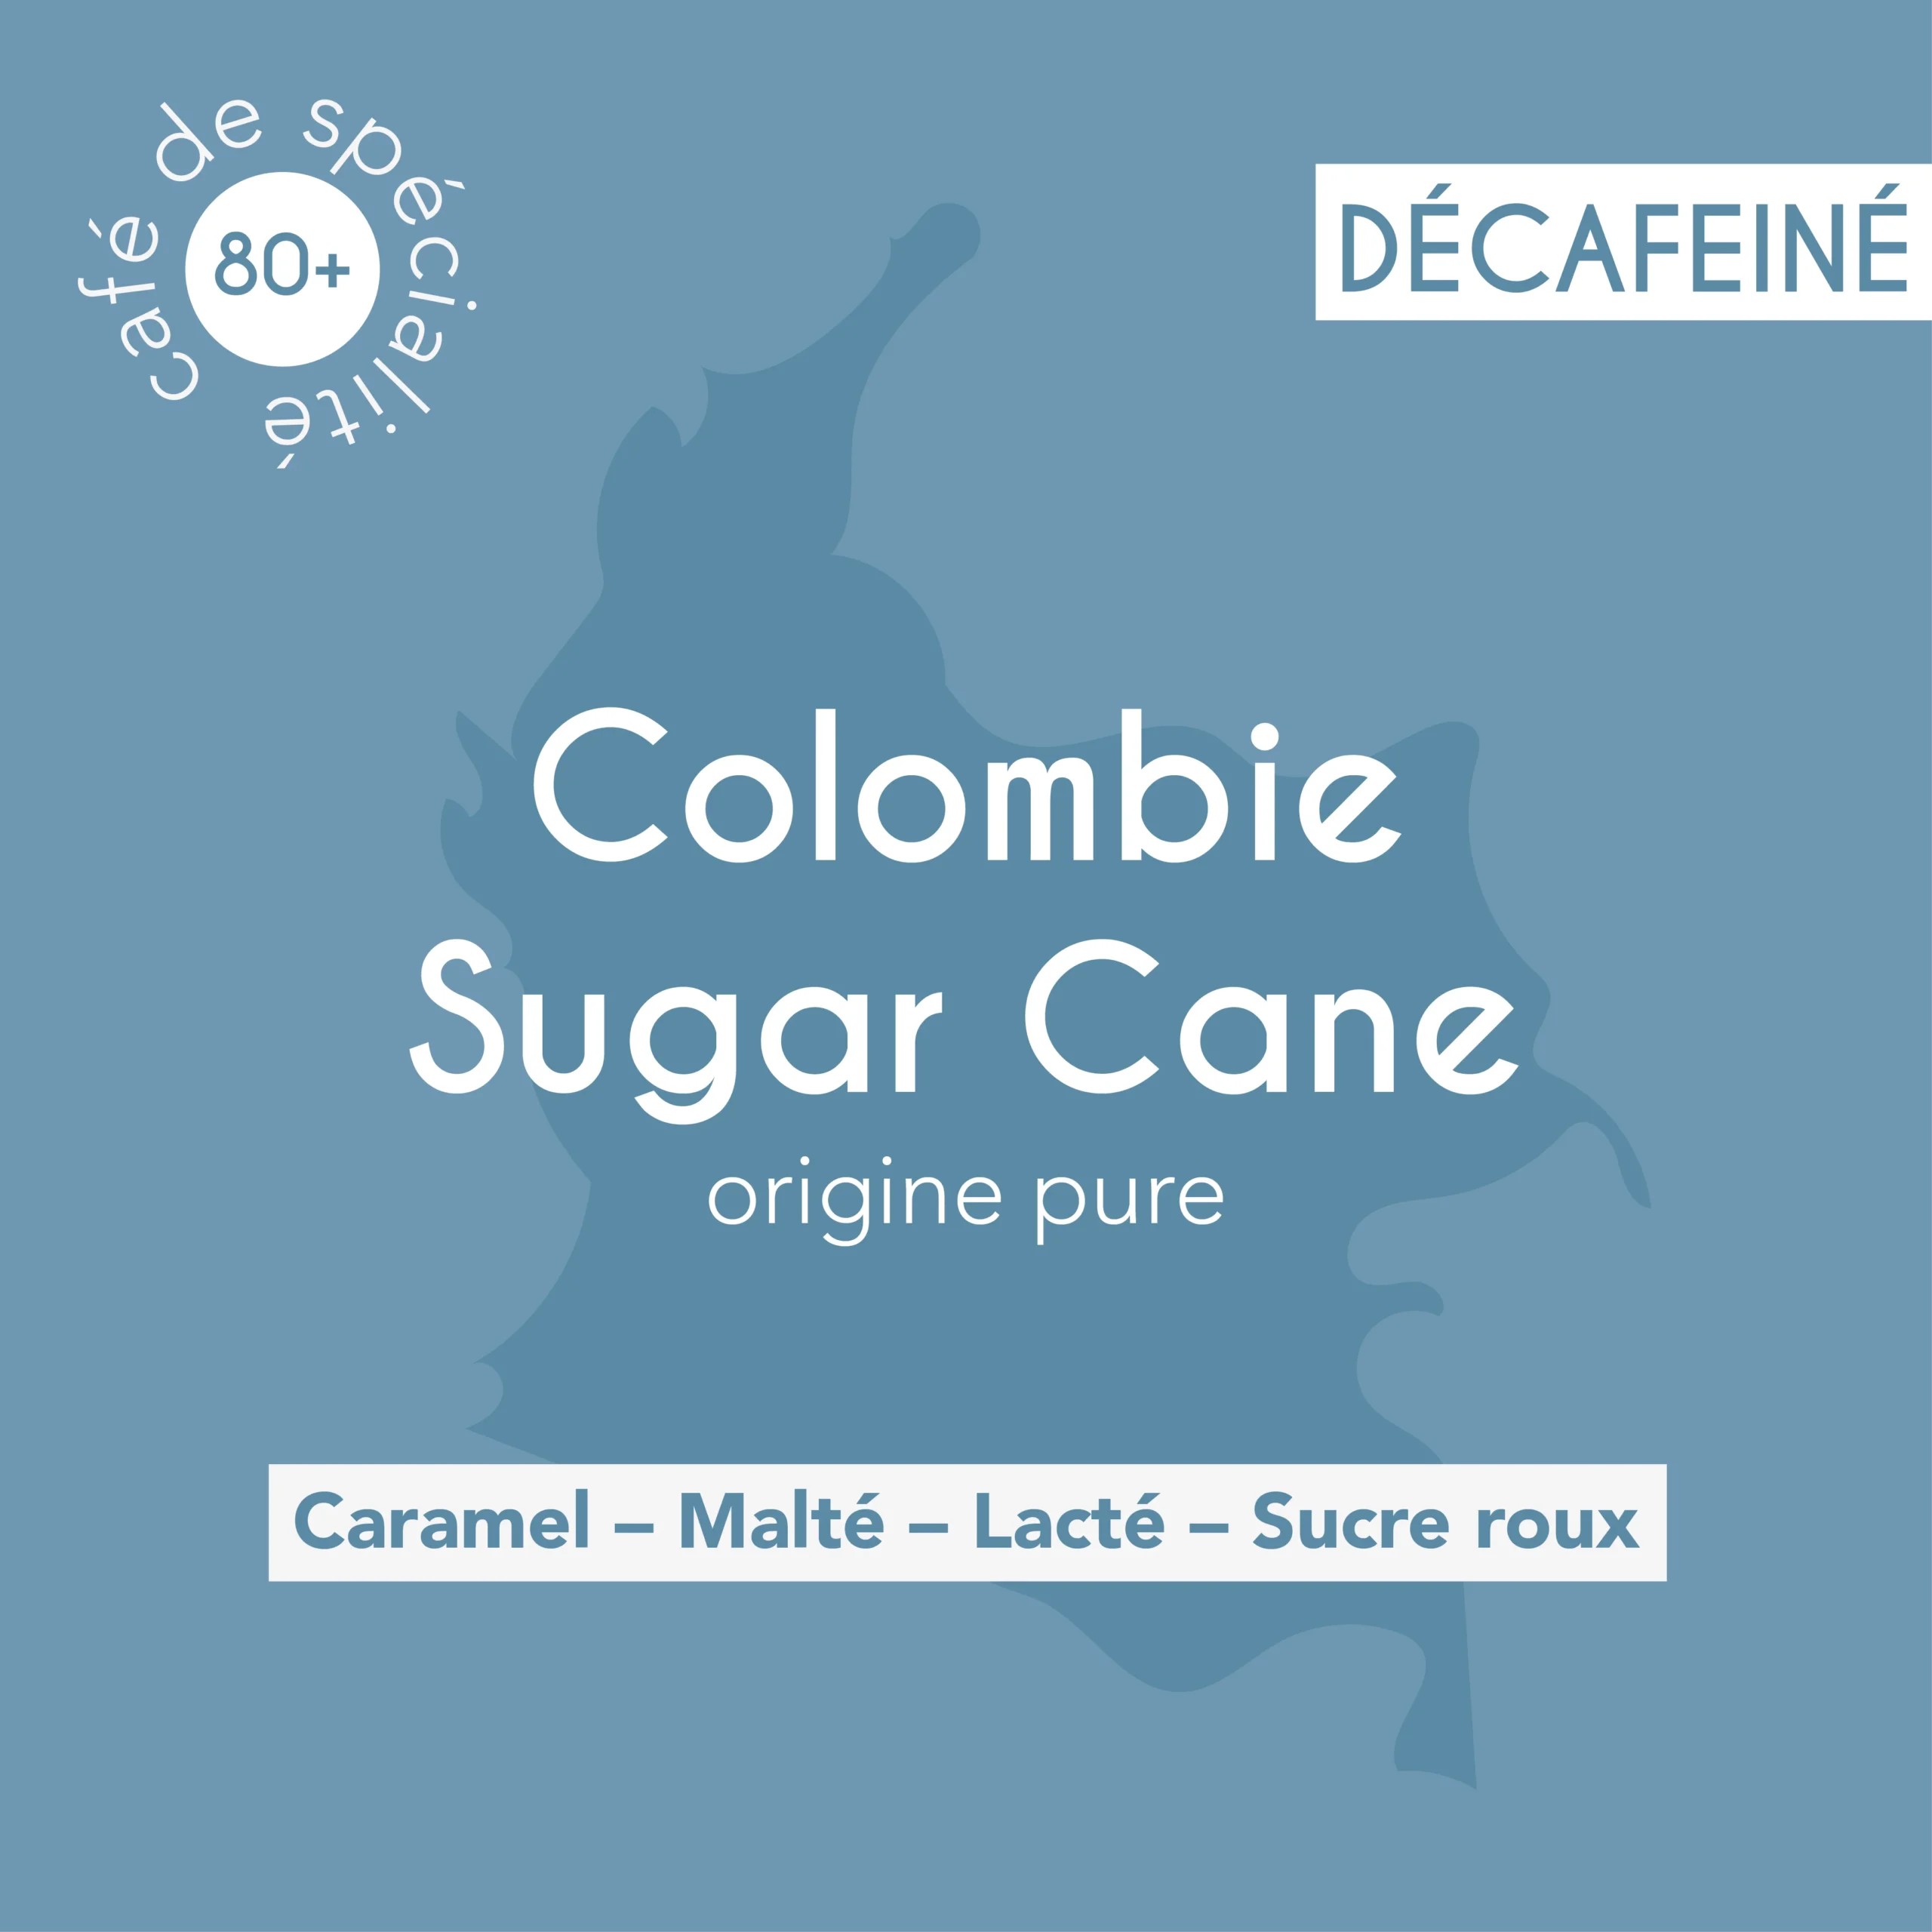 Illustration du décaféiné Colombie-sugar-cane